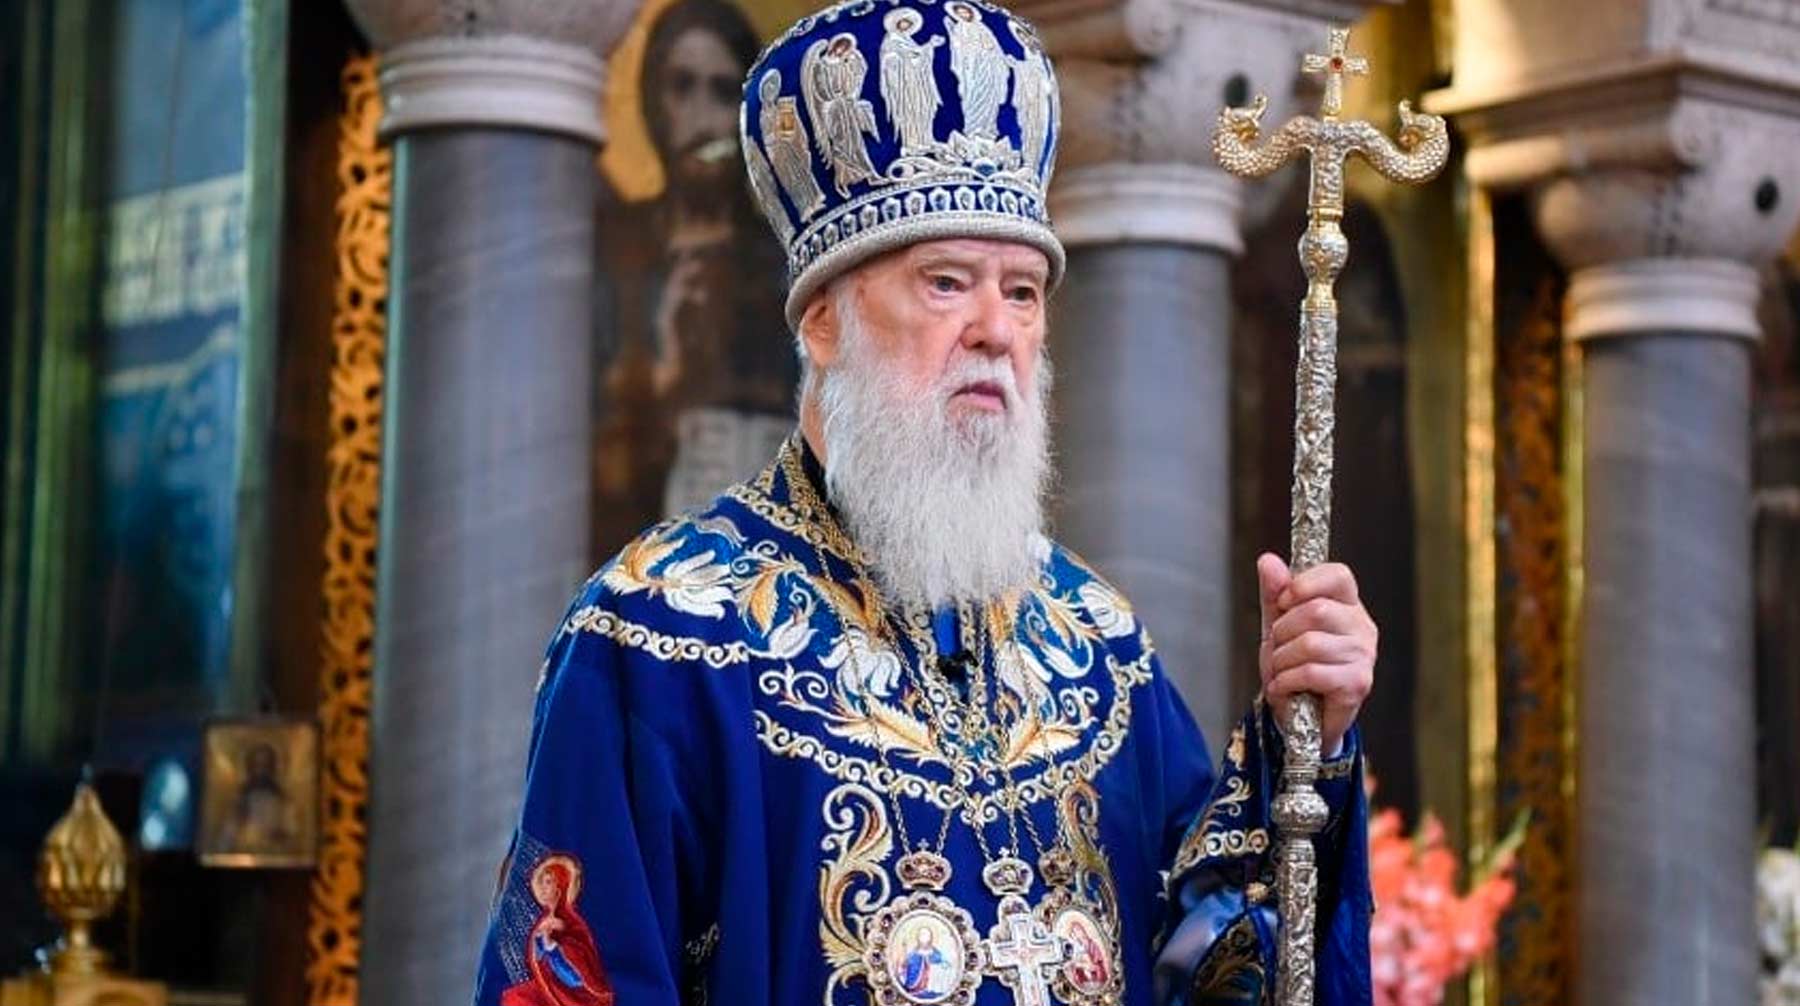 Состояние больного удовлетворительное Глава Киевского патриархата Филарет